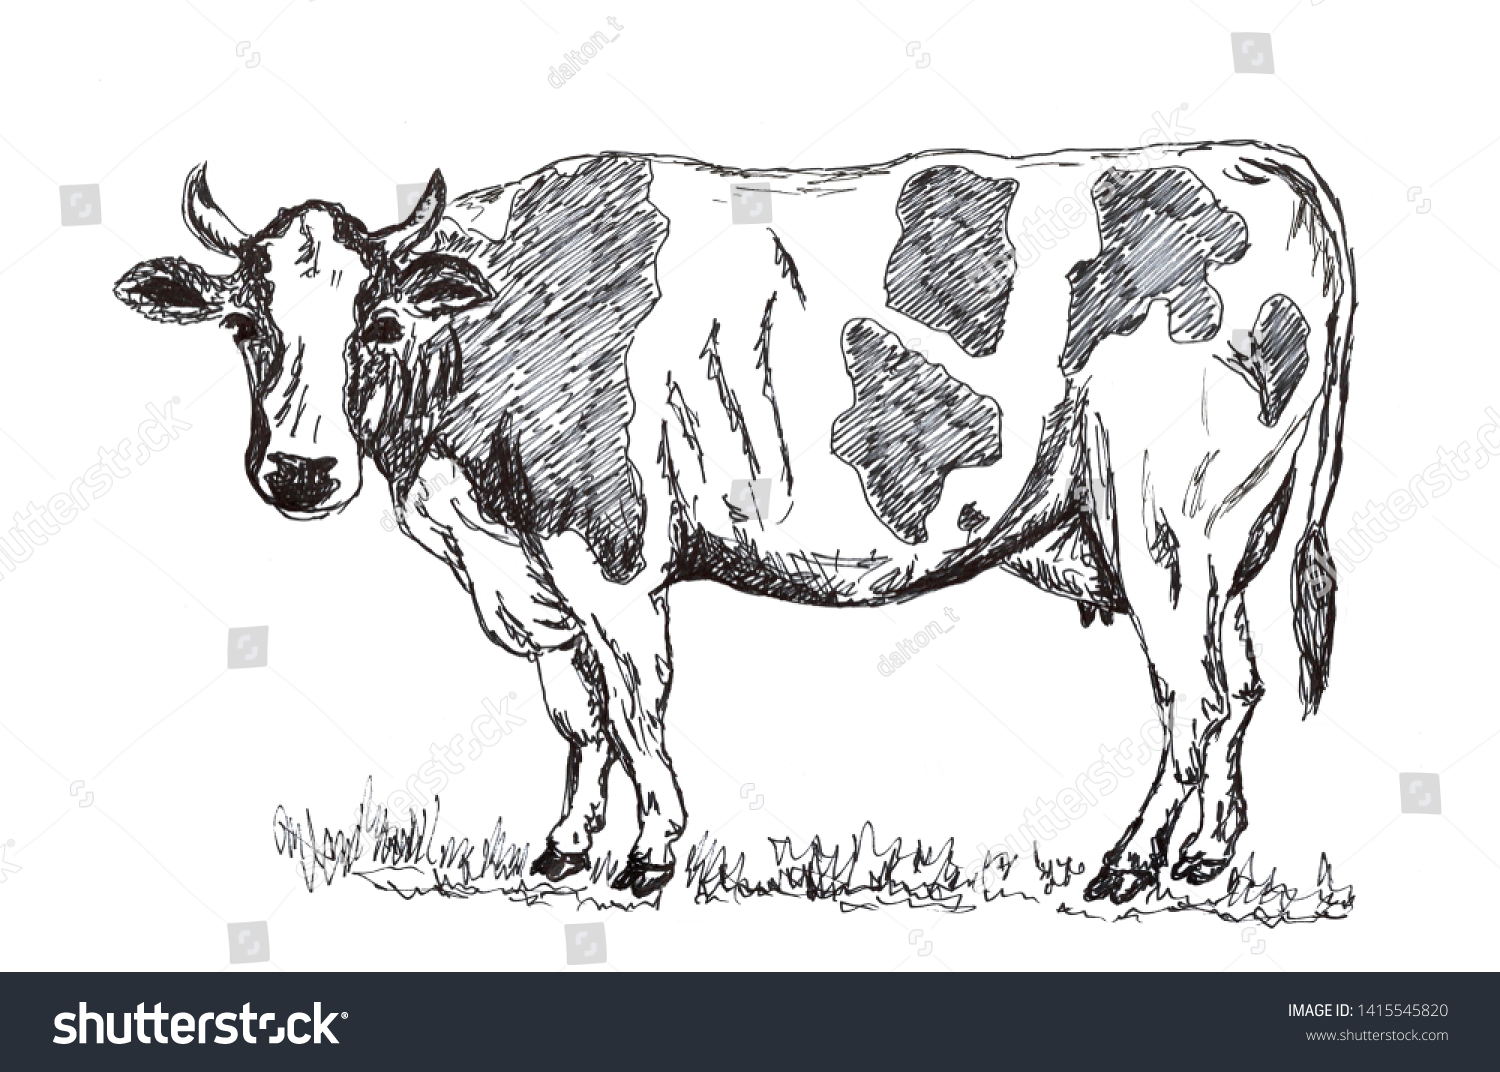 白黒の手描きの牛の鉛筆のイラスト のイラスト素材